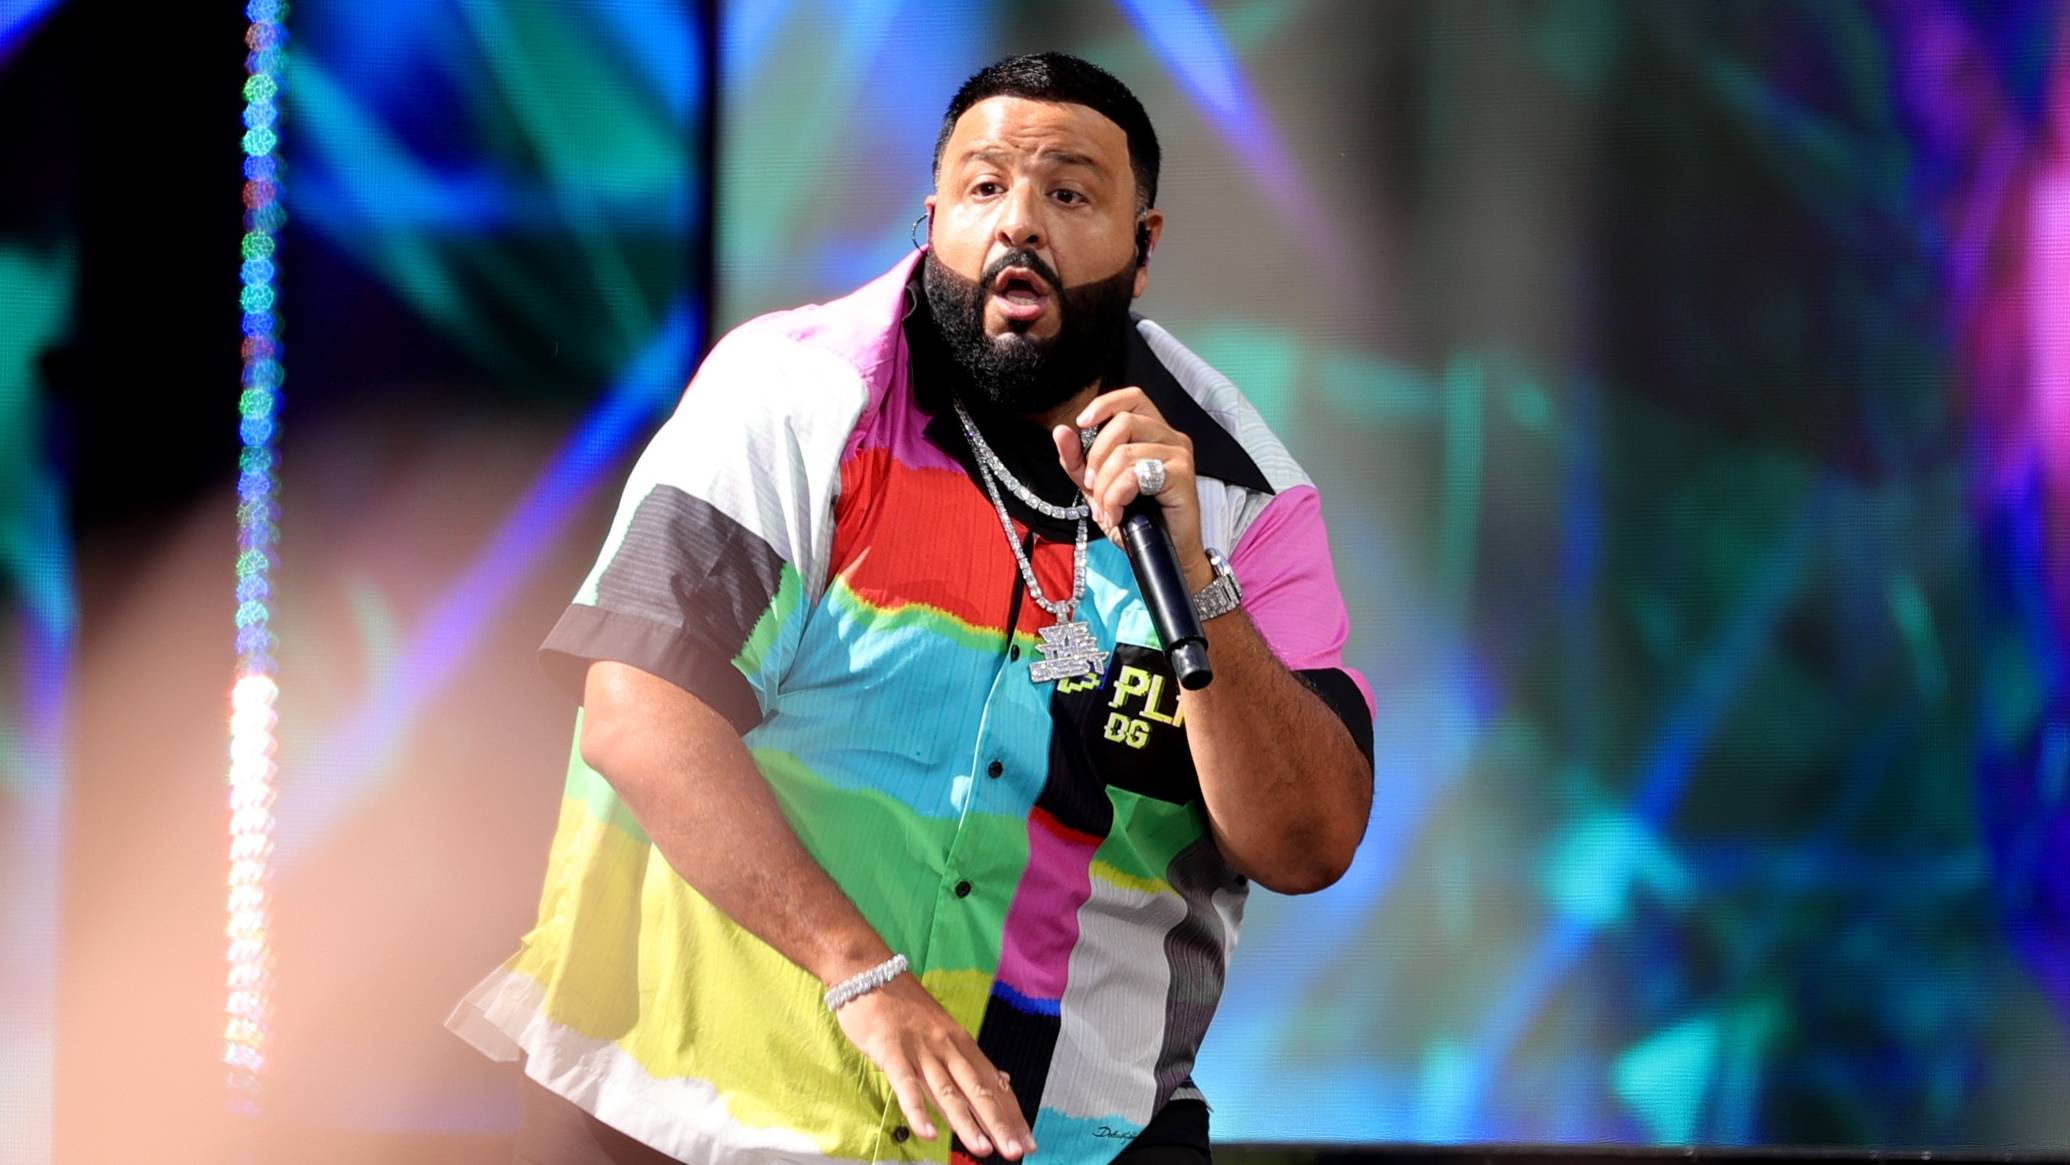 Jay-Z to Perform at Grammy Awards With DJ Khaled, Lil Wayne